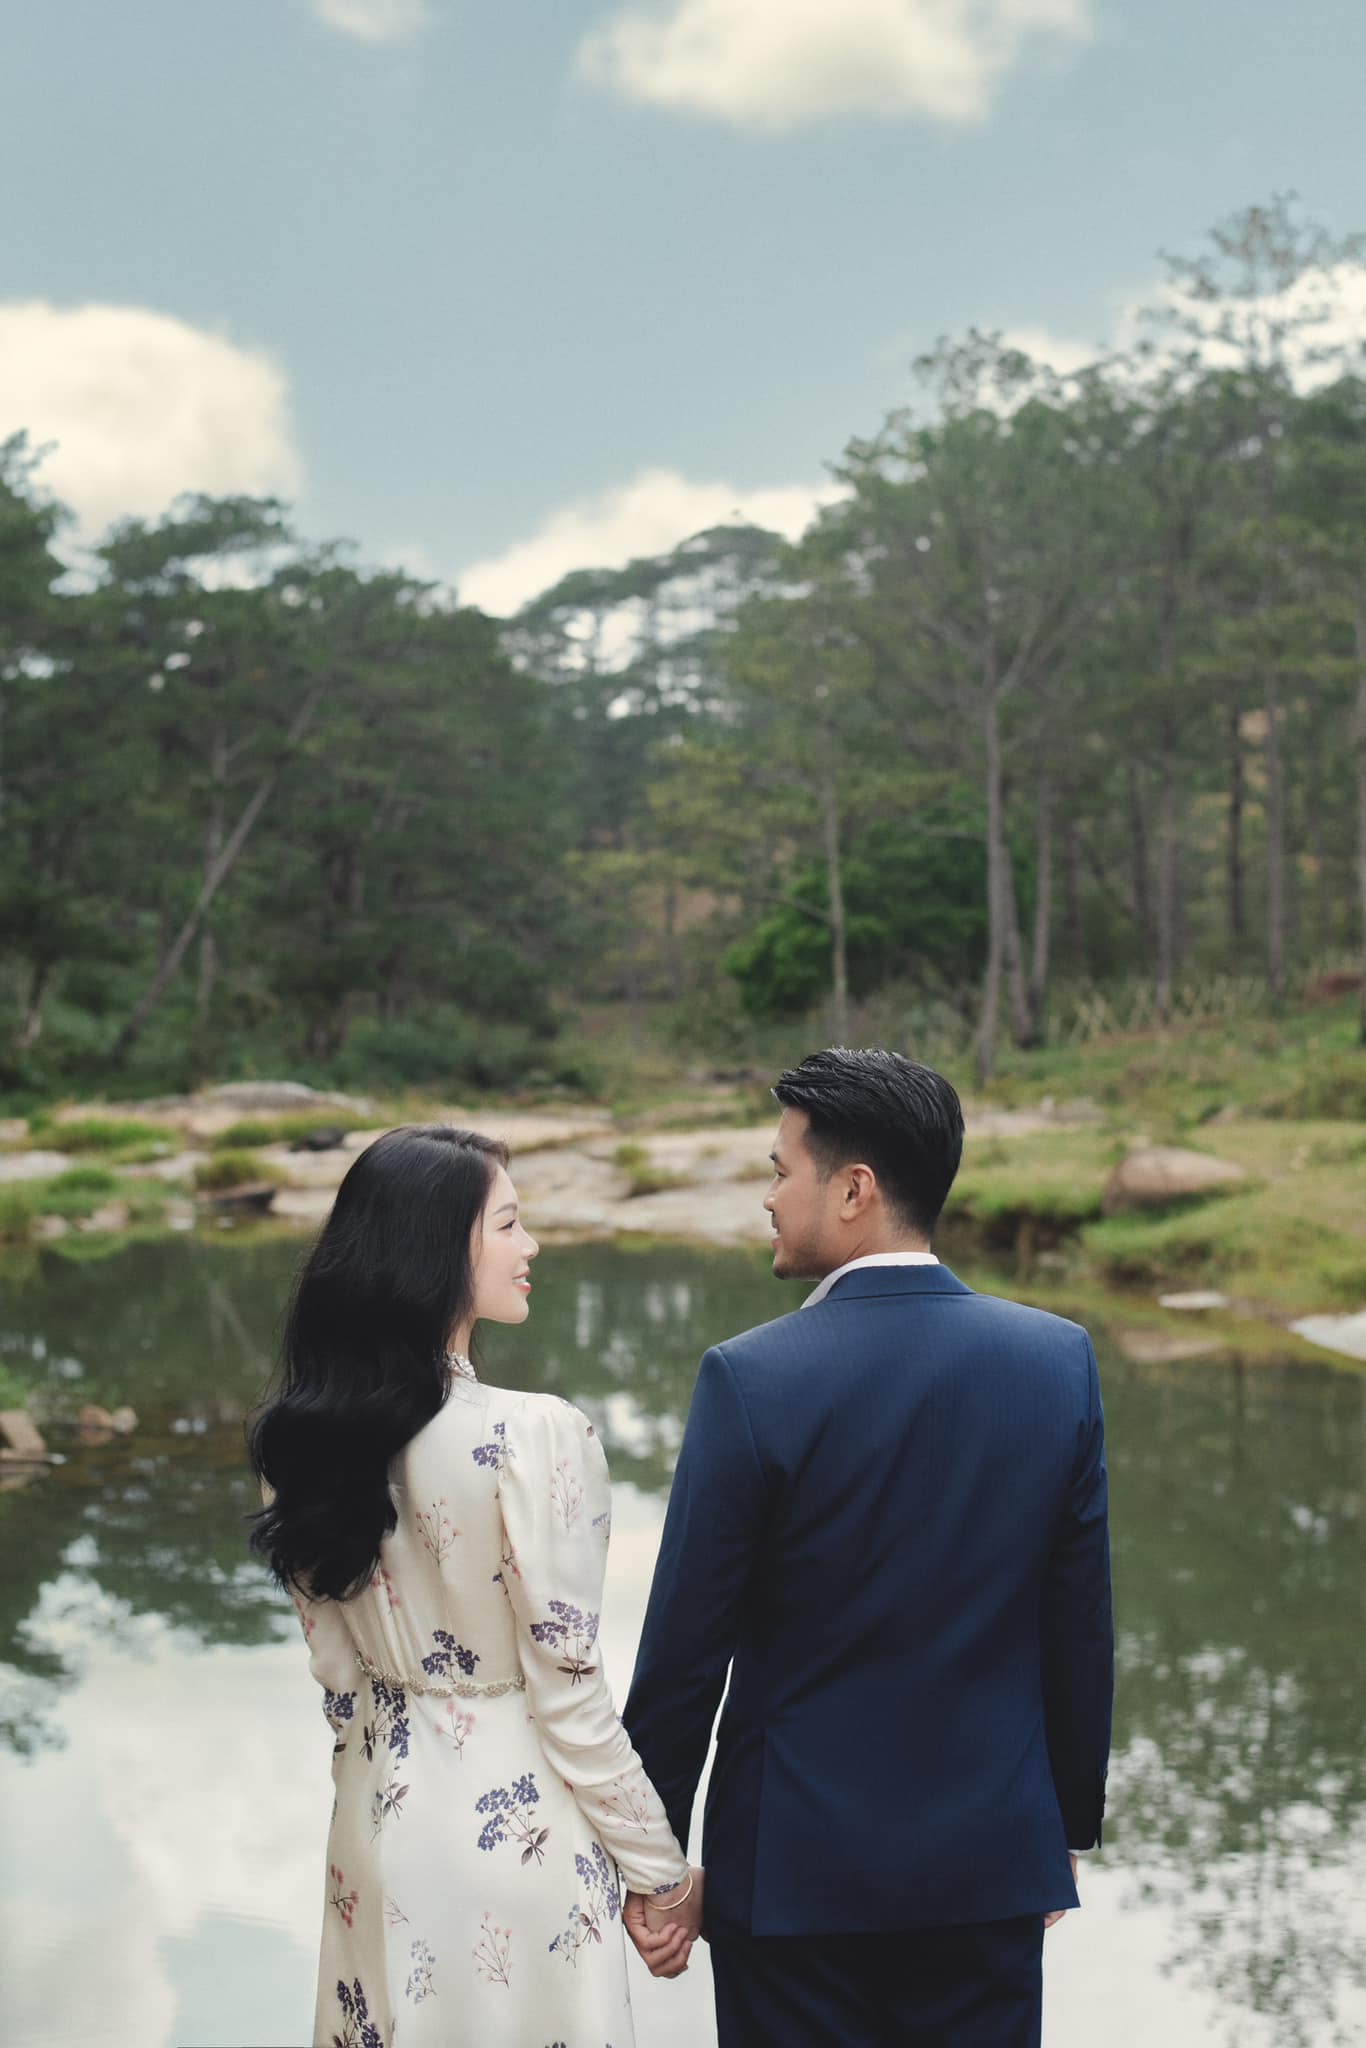 Dàn sao Việt nô nức sang Philippines dự đám cưới của Linh Rin và thiếu gia nhà tỷ phú hàng hiệu - ảnh 6